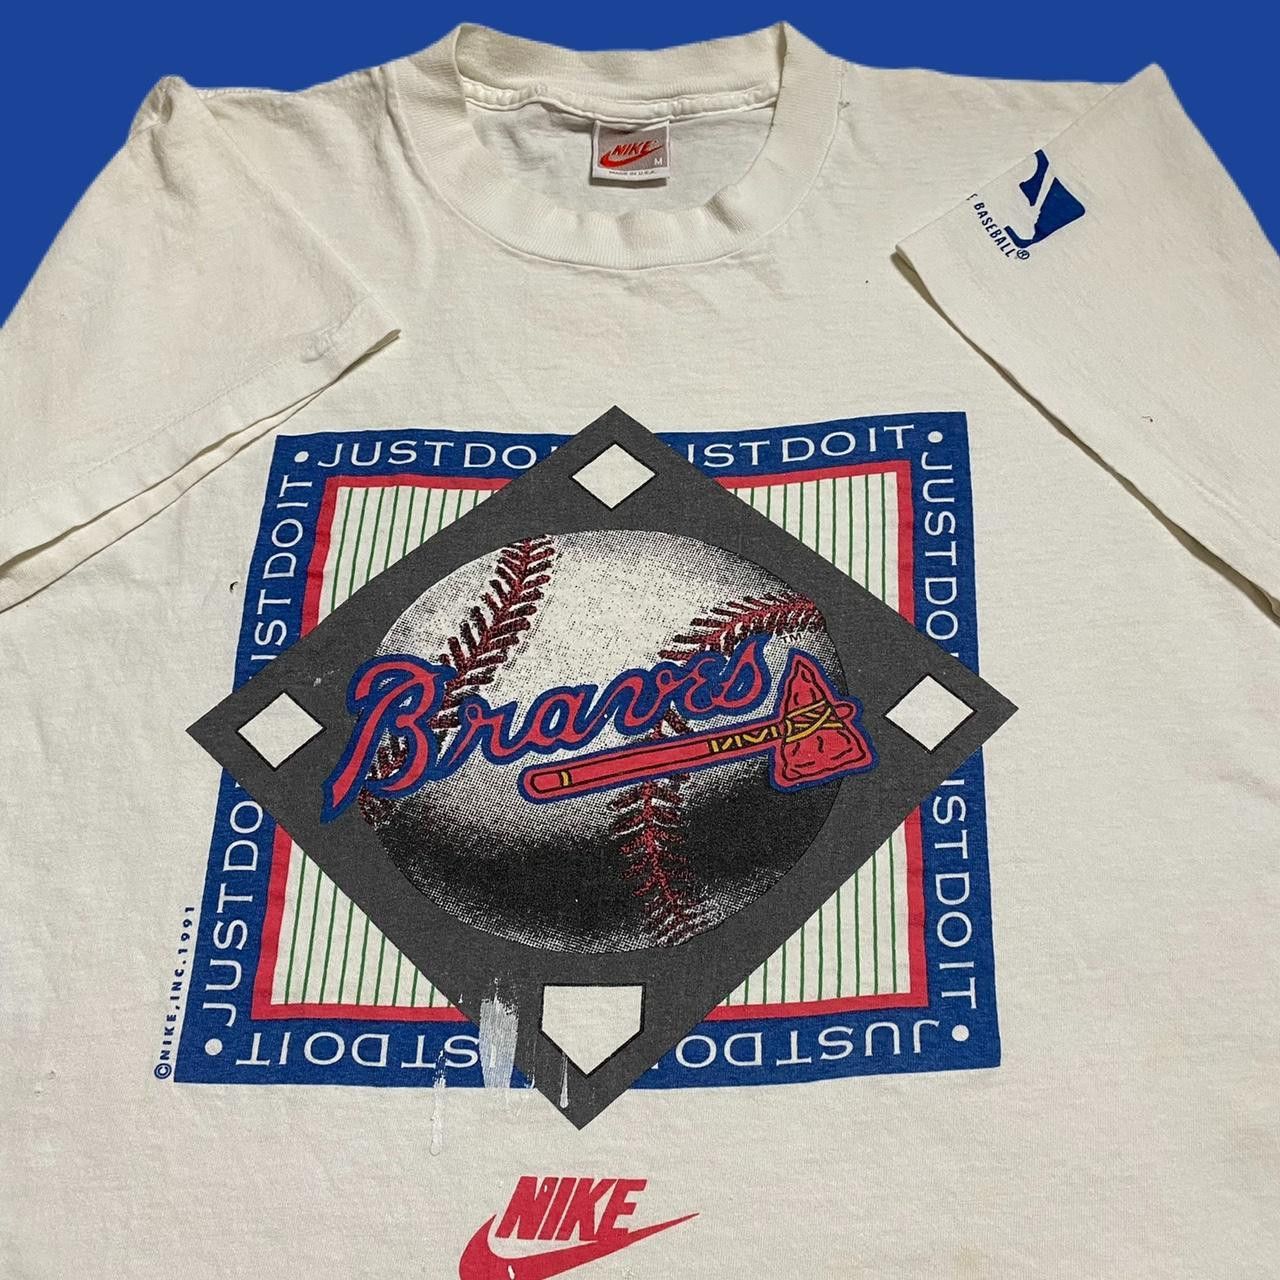 Nike vintage 1991 nike atlanta braves mlb shirt